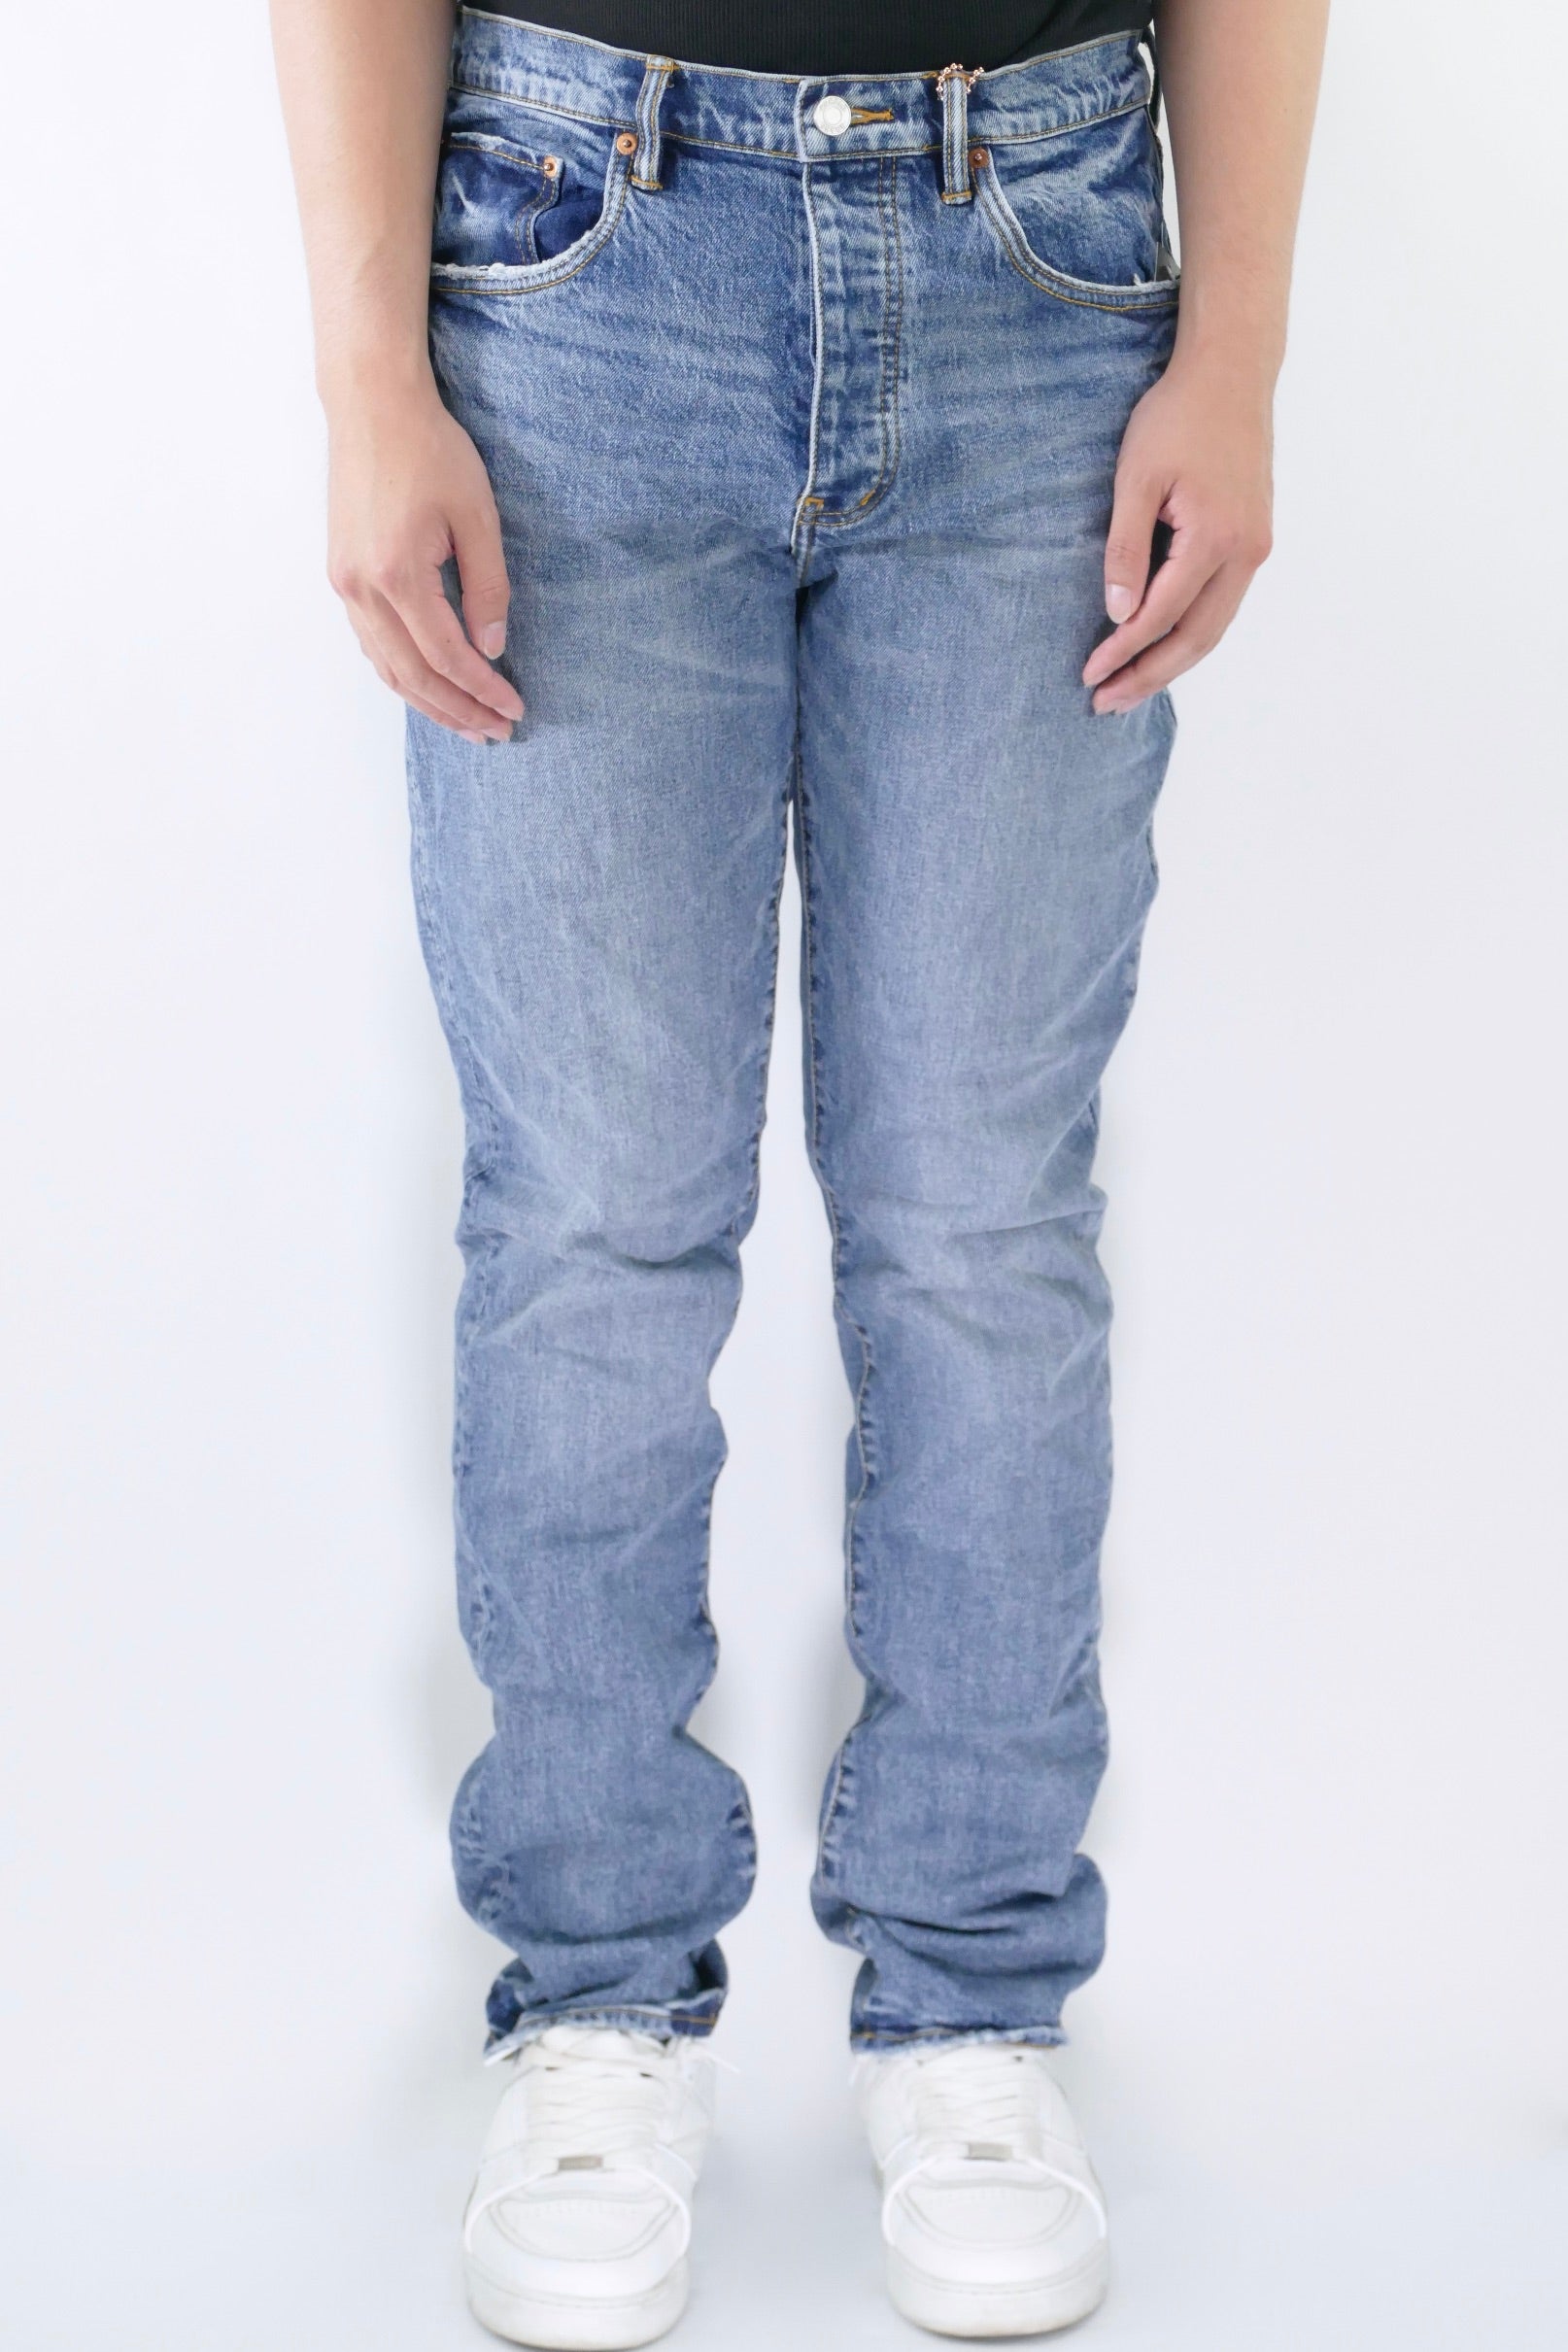 J Brand Mens Solid Cotton Dark Wash Straight Leg Denim Jeans Blue Size 36